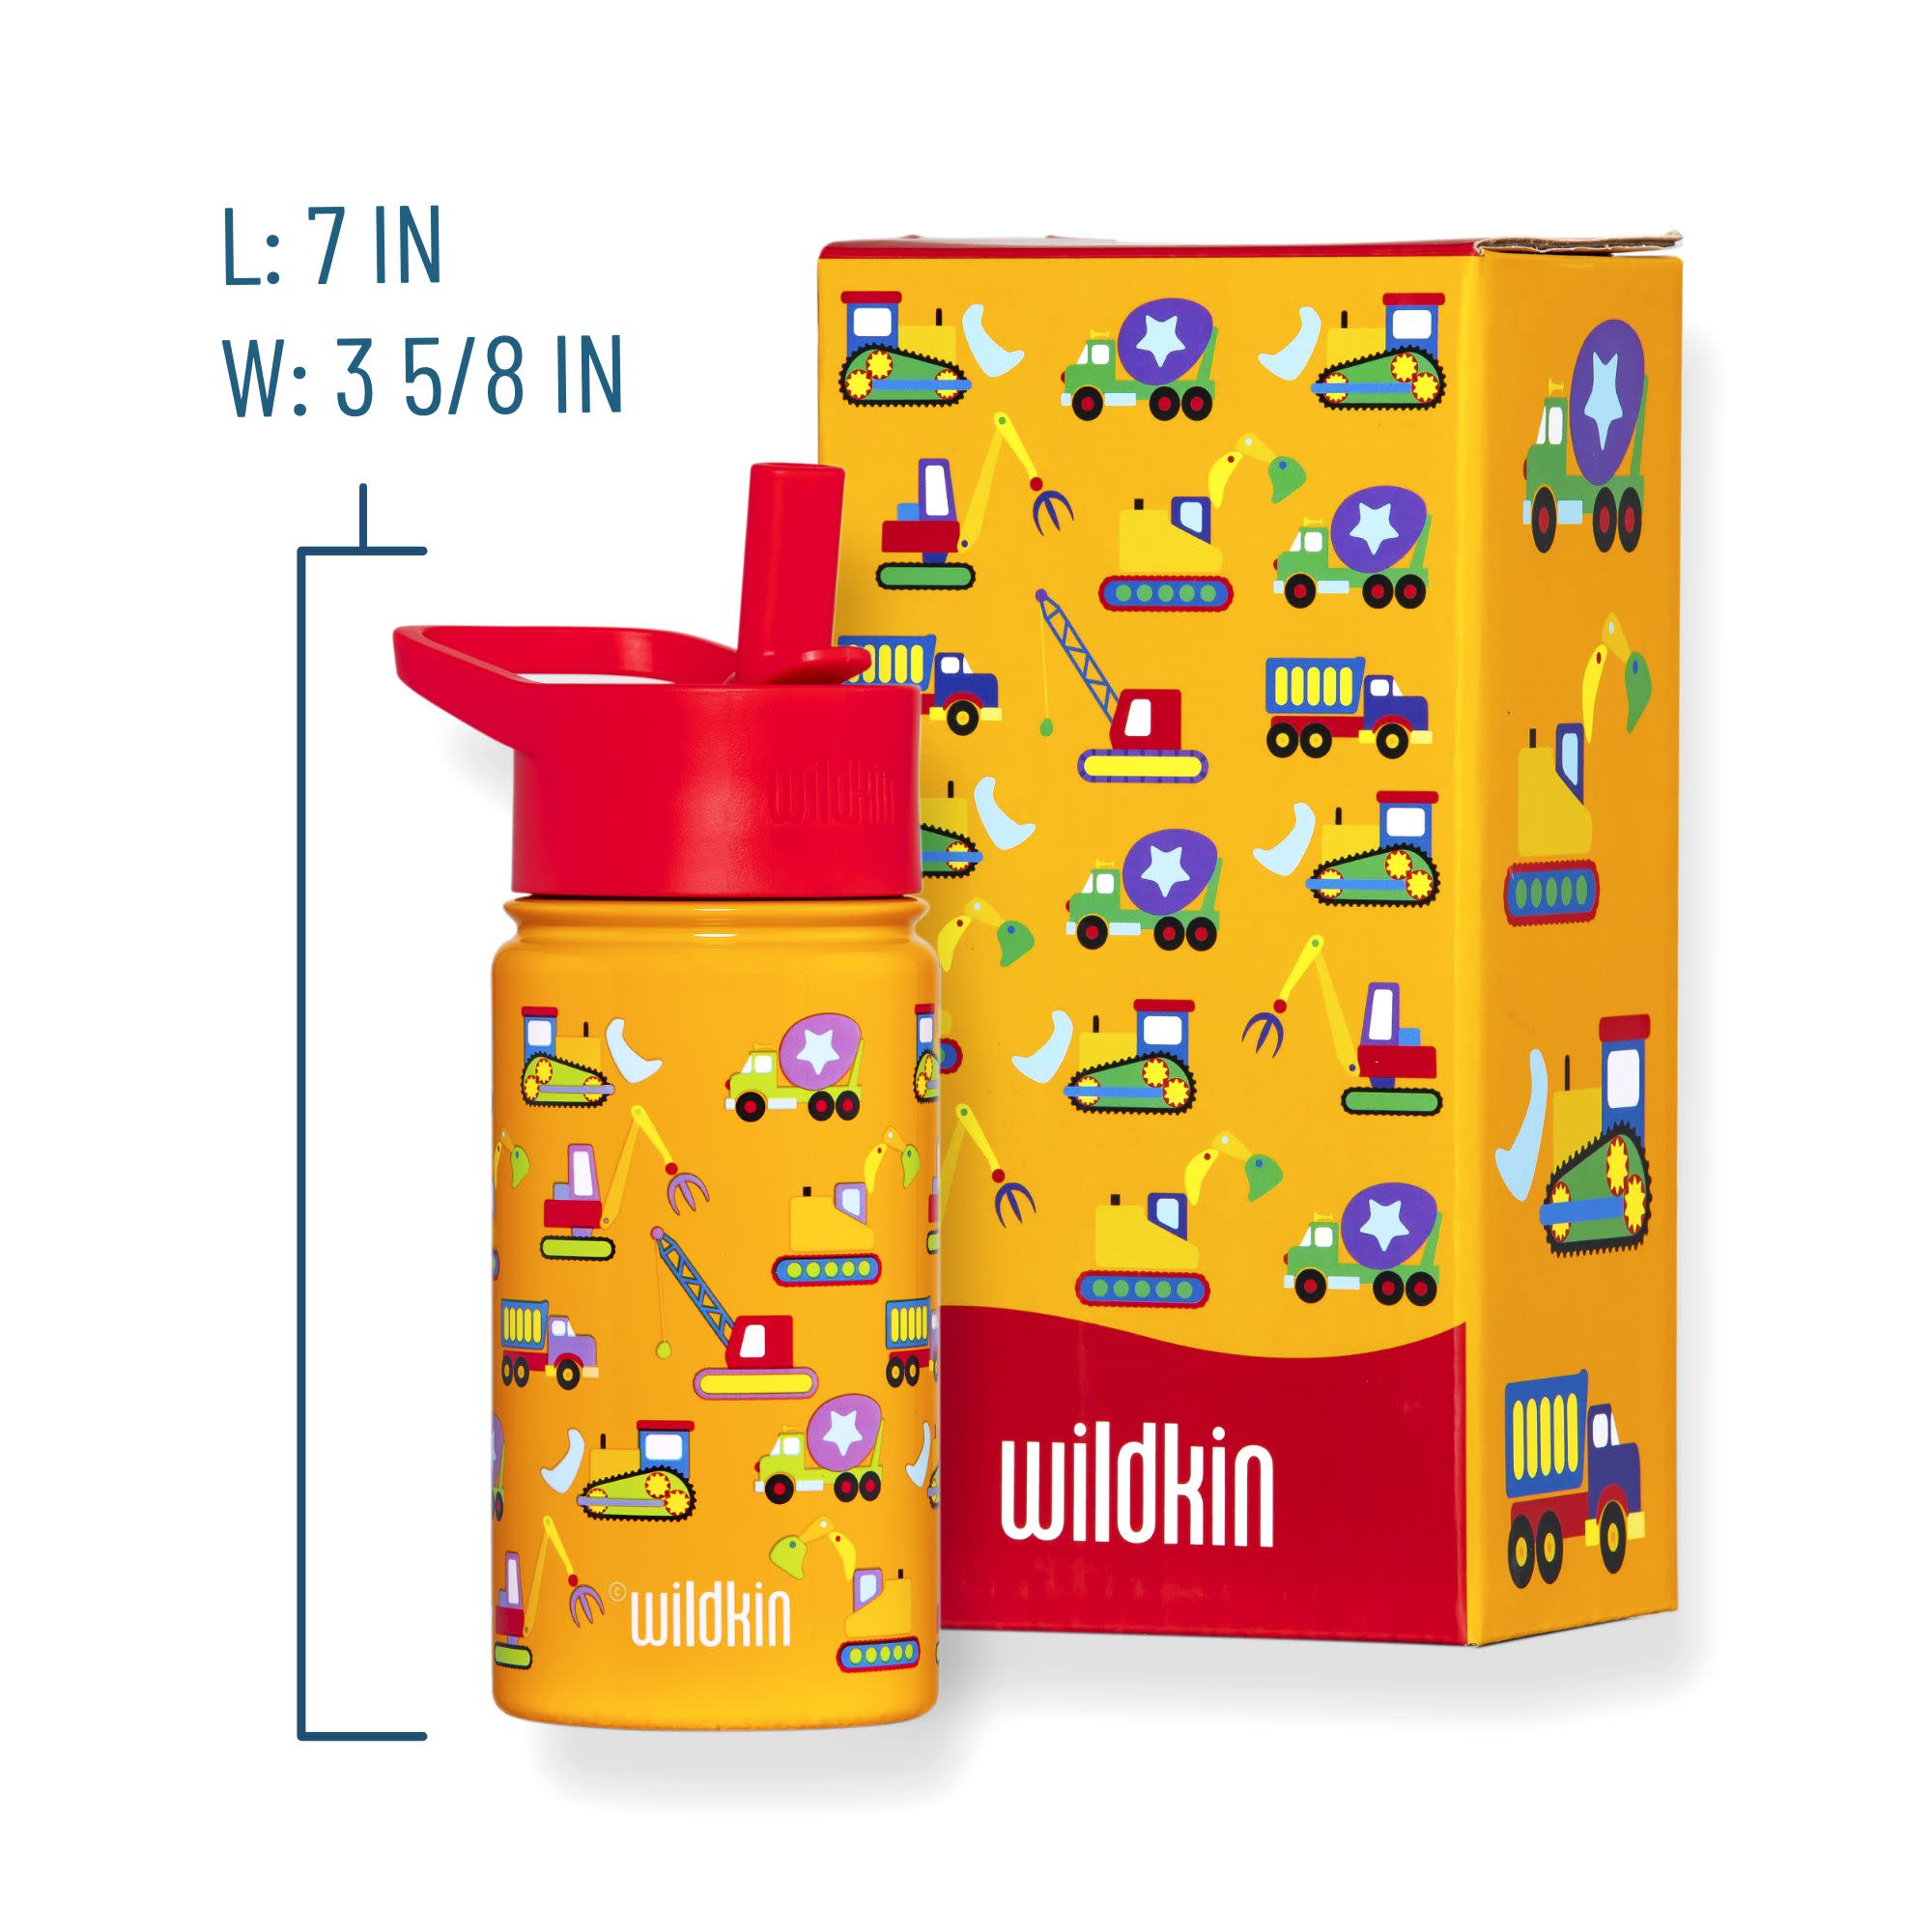 Wildkin Kids Water Bottle, Kids Bottle